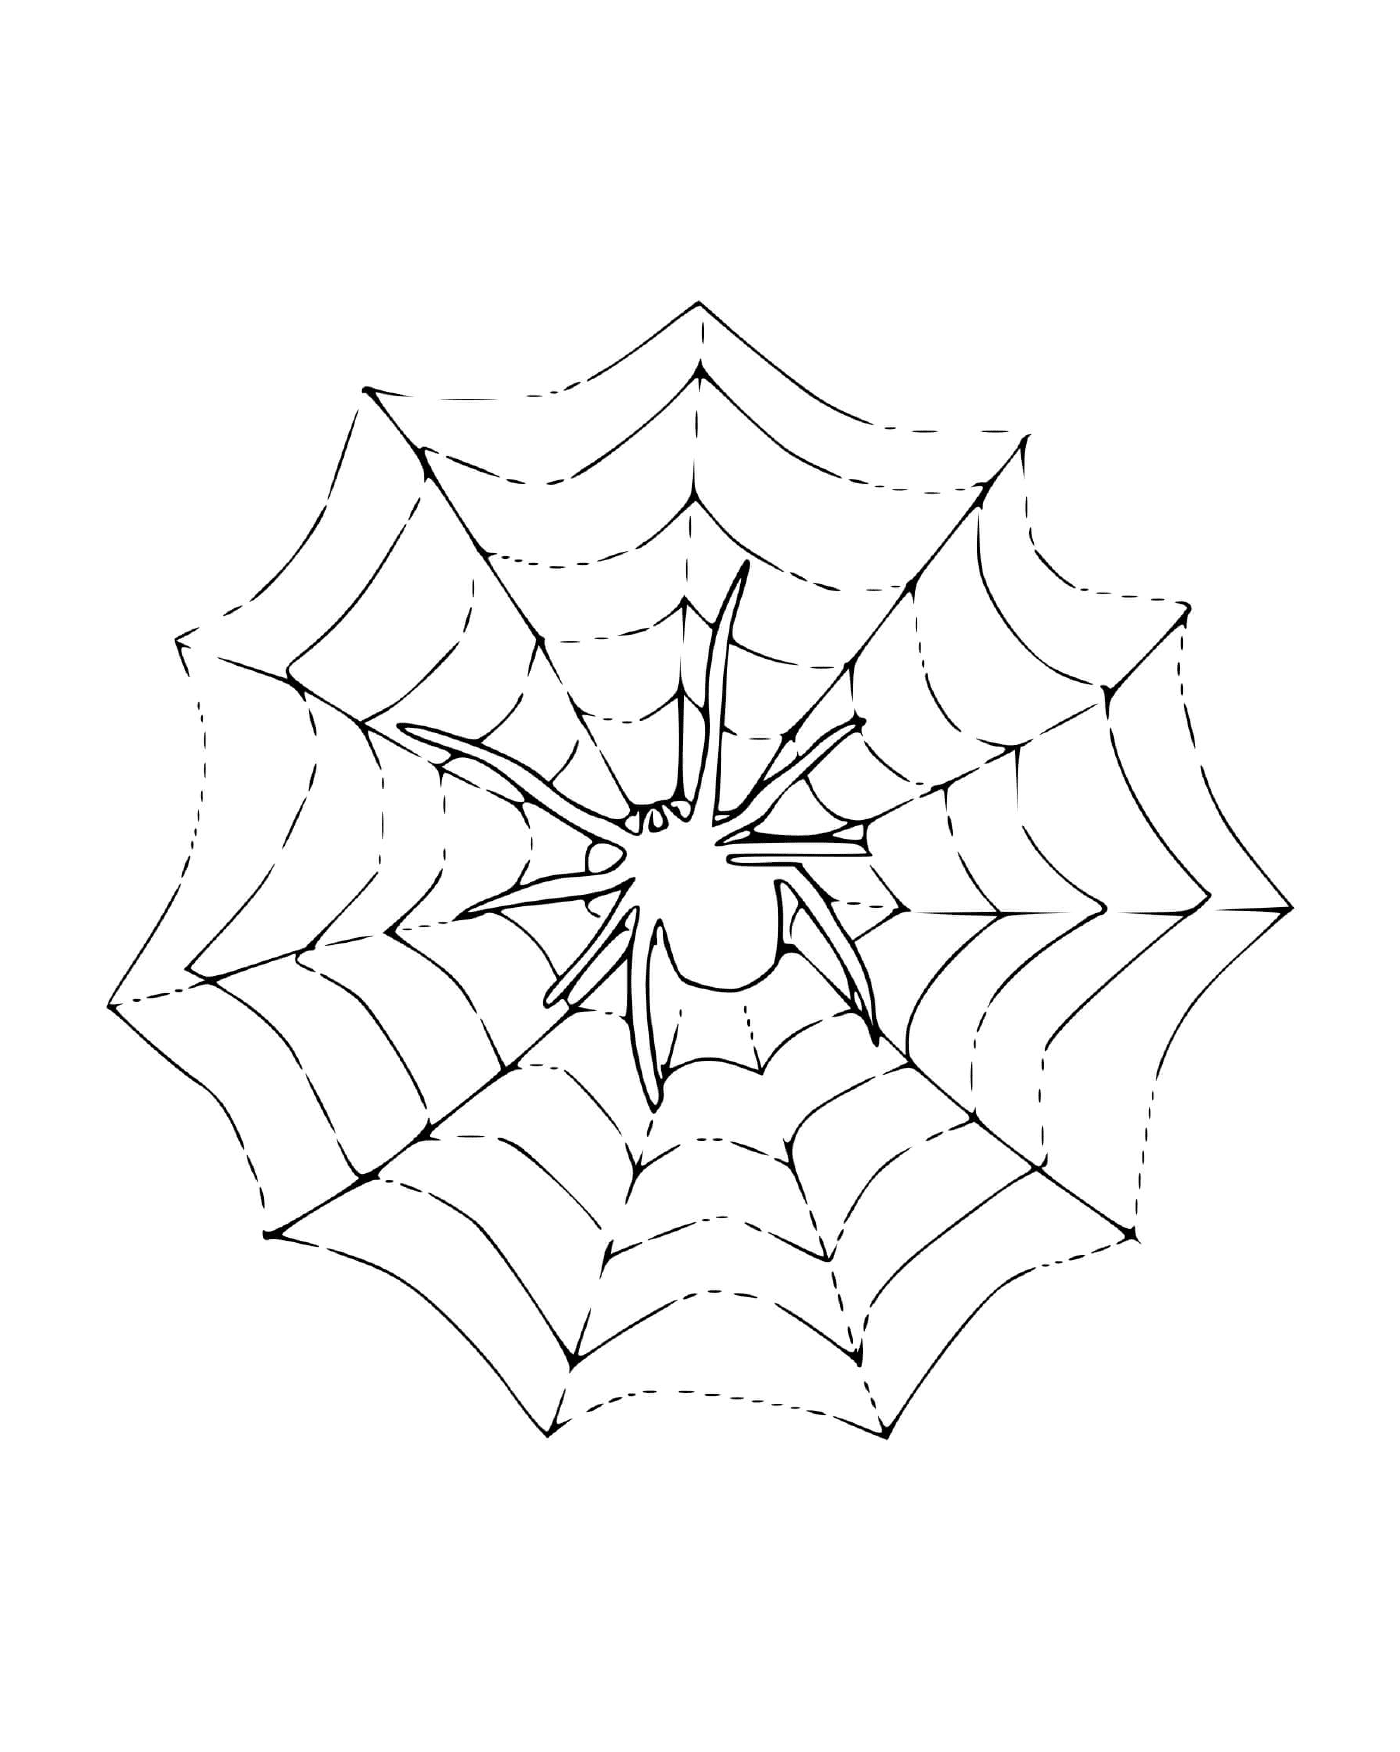  一只蜘蛛坐在网上 